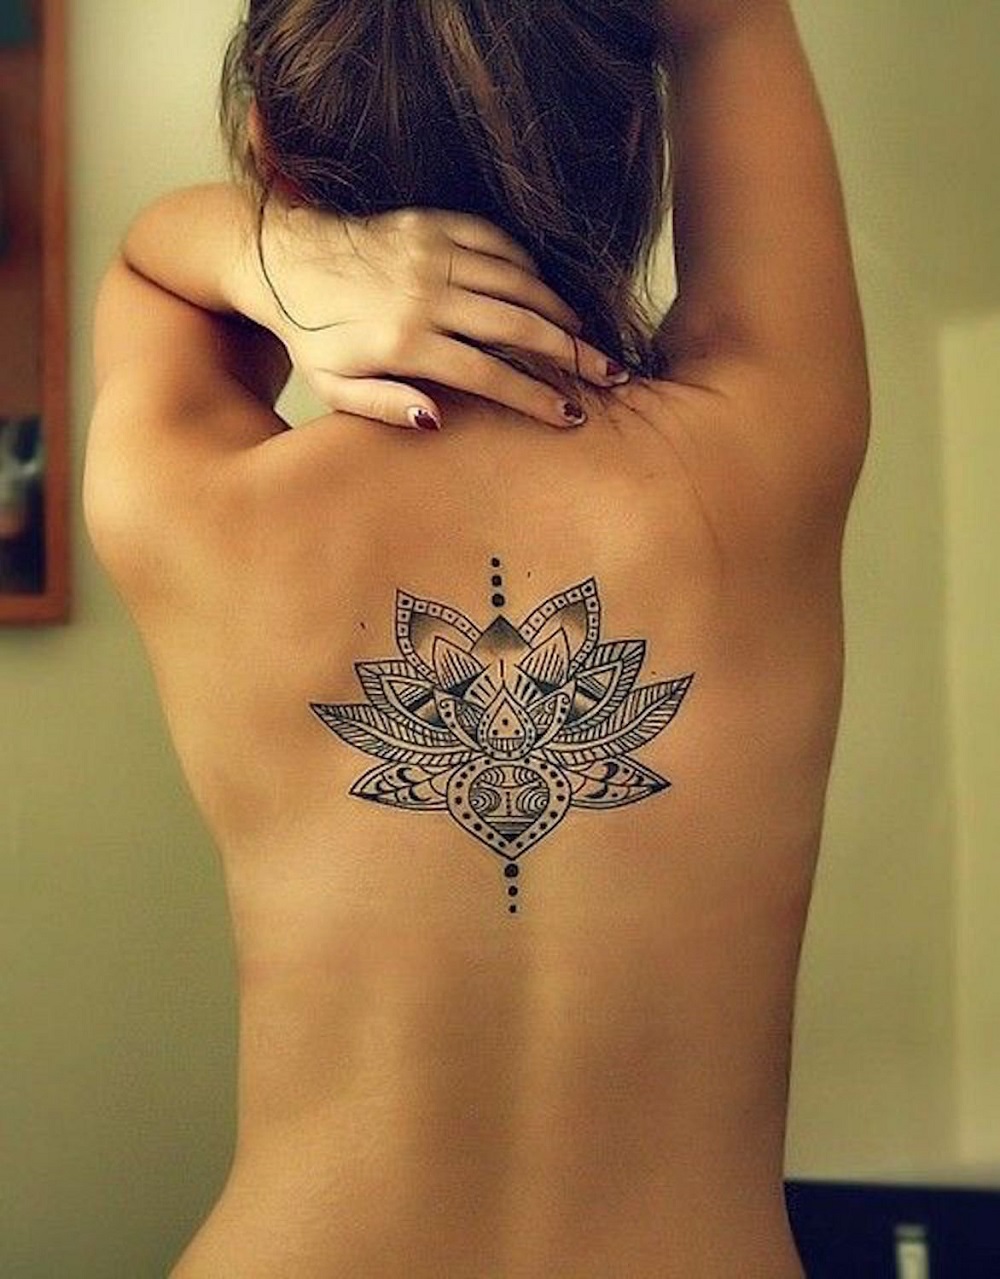 Tatuagem nas costas - belo padrão